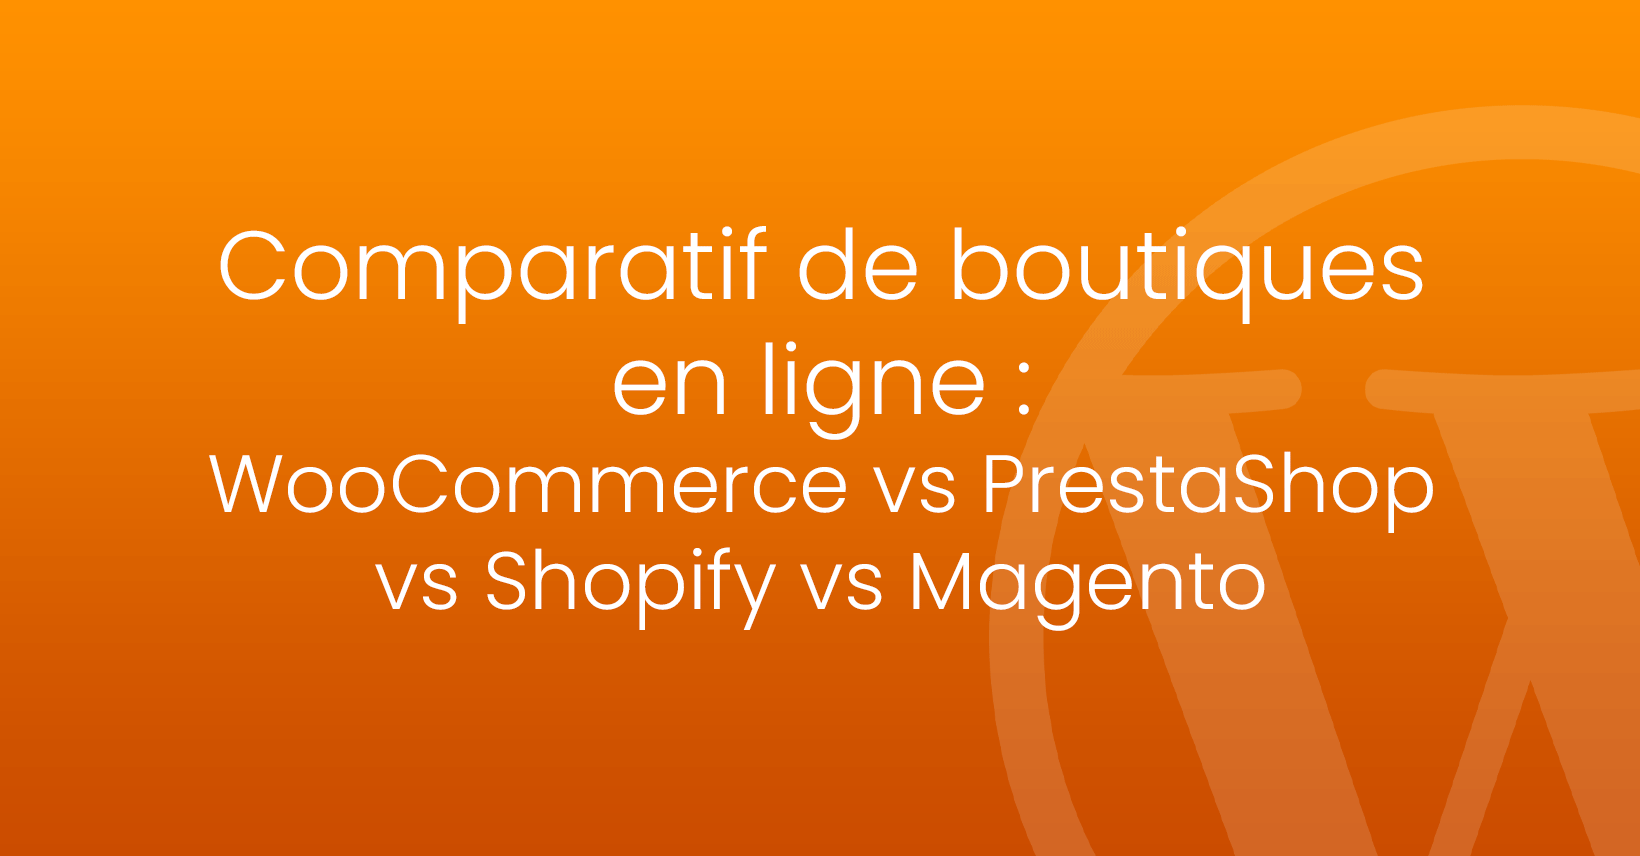 Comparatif de boutiques en ligne : WooCommerce vs PrestaShop vs Shopify vs Magento